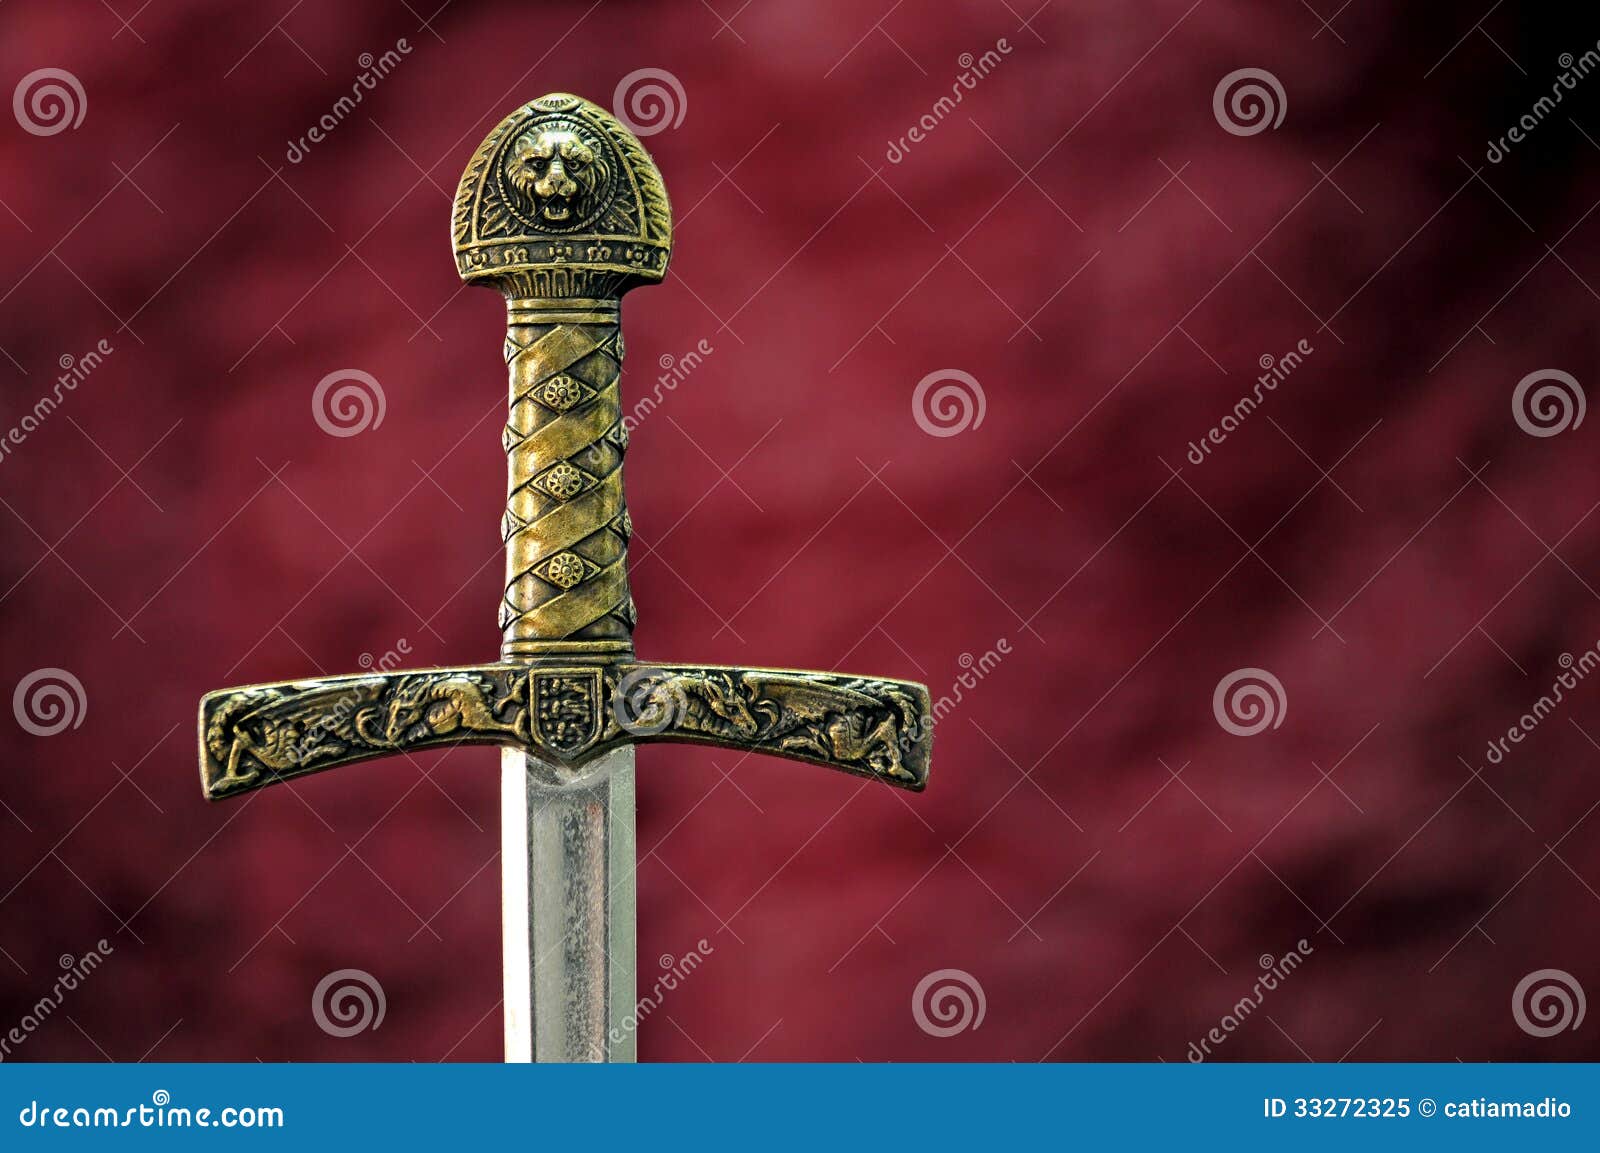 medieval sword